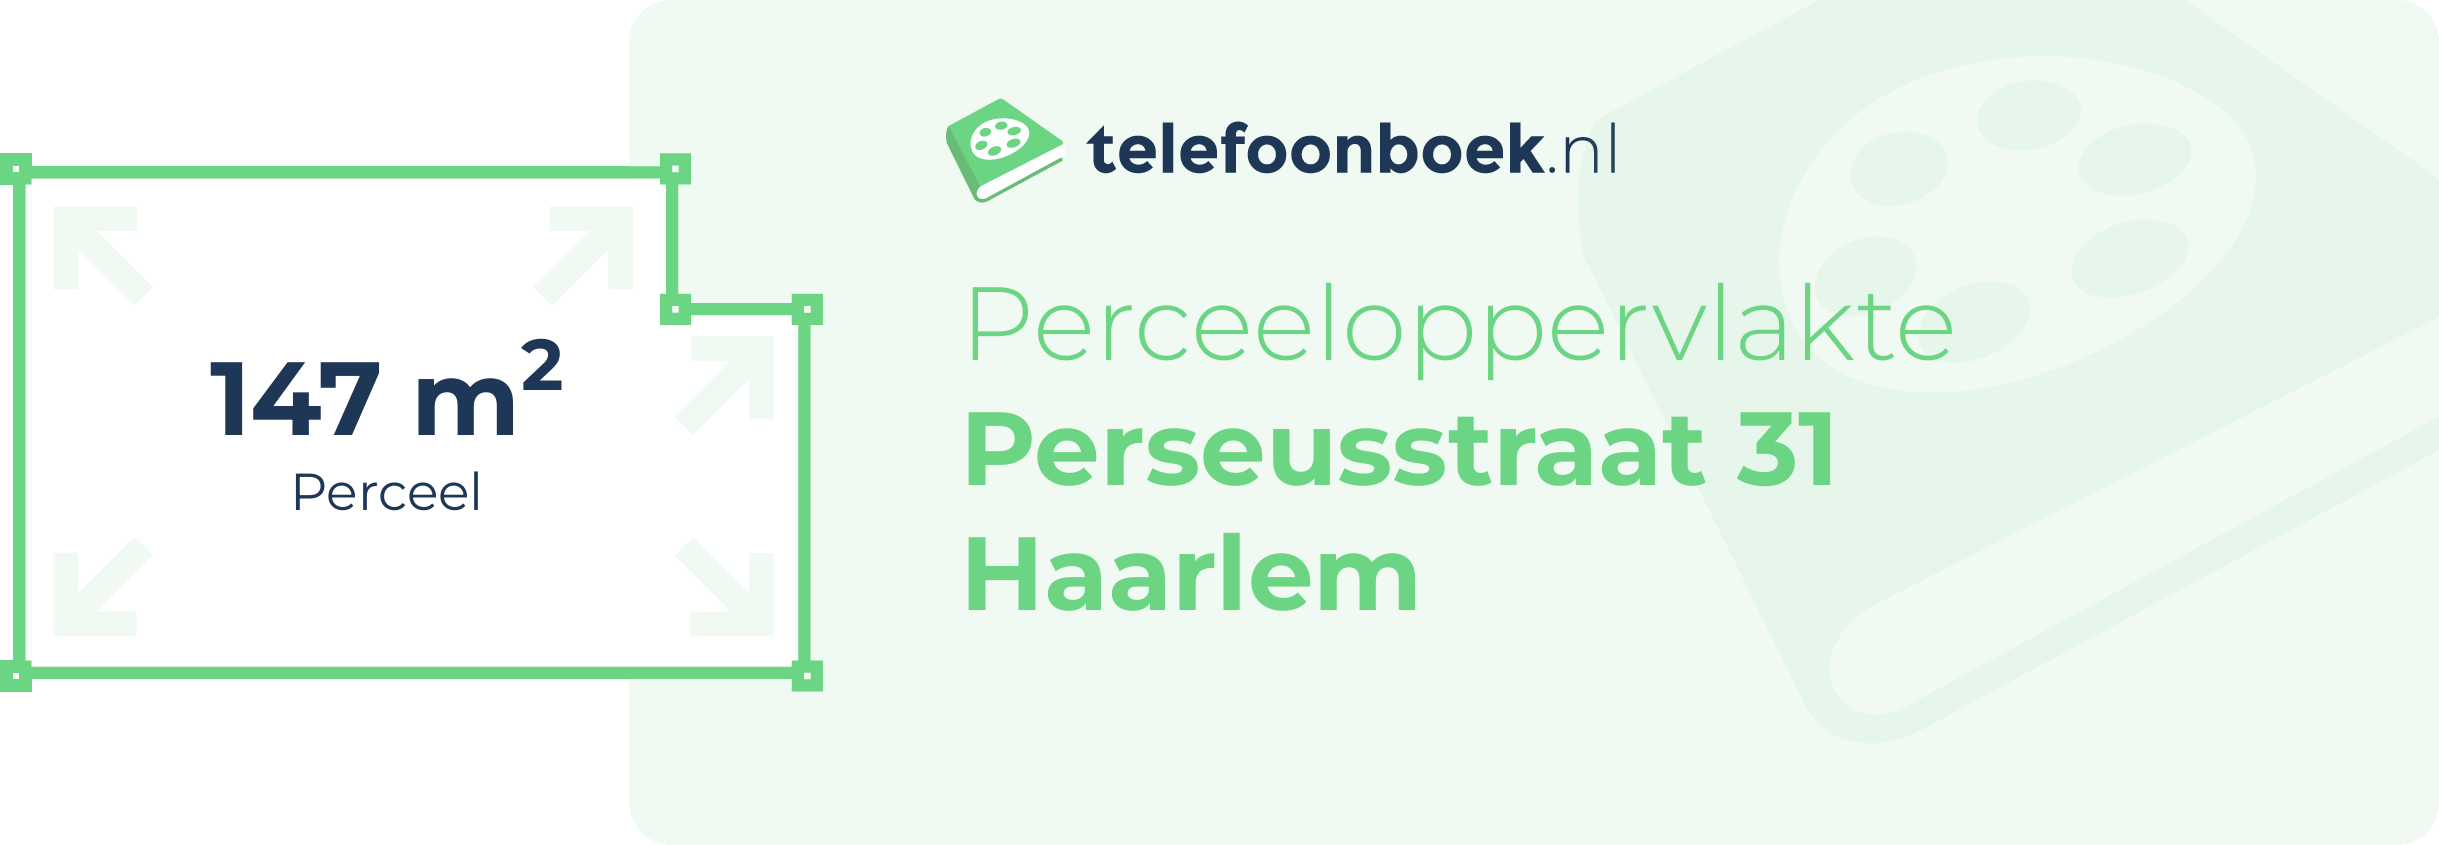 Perceeloppervlakte Perseusstraat 31 Haarlem